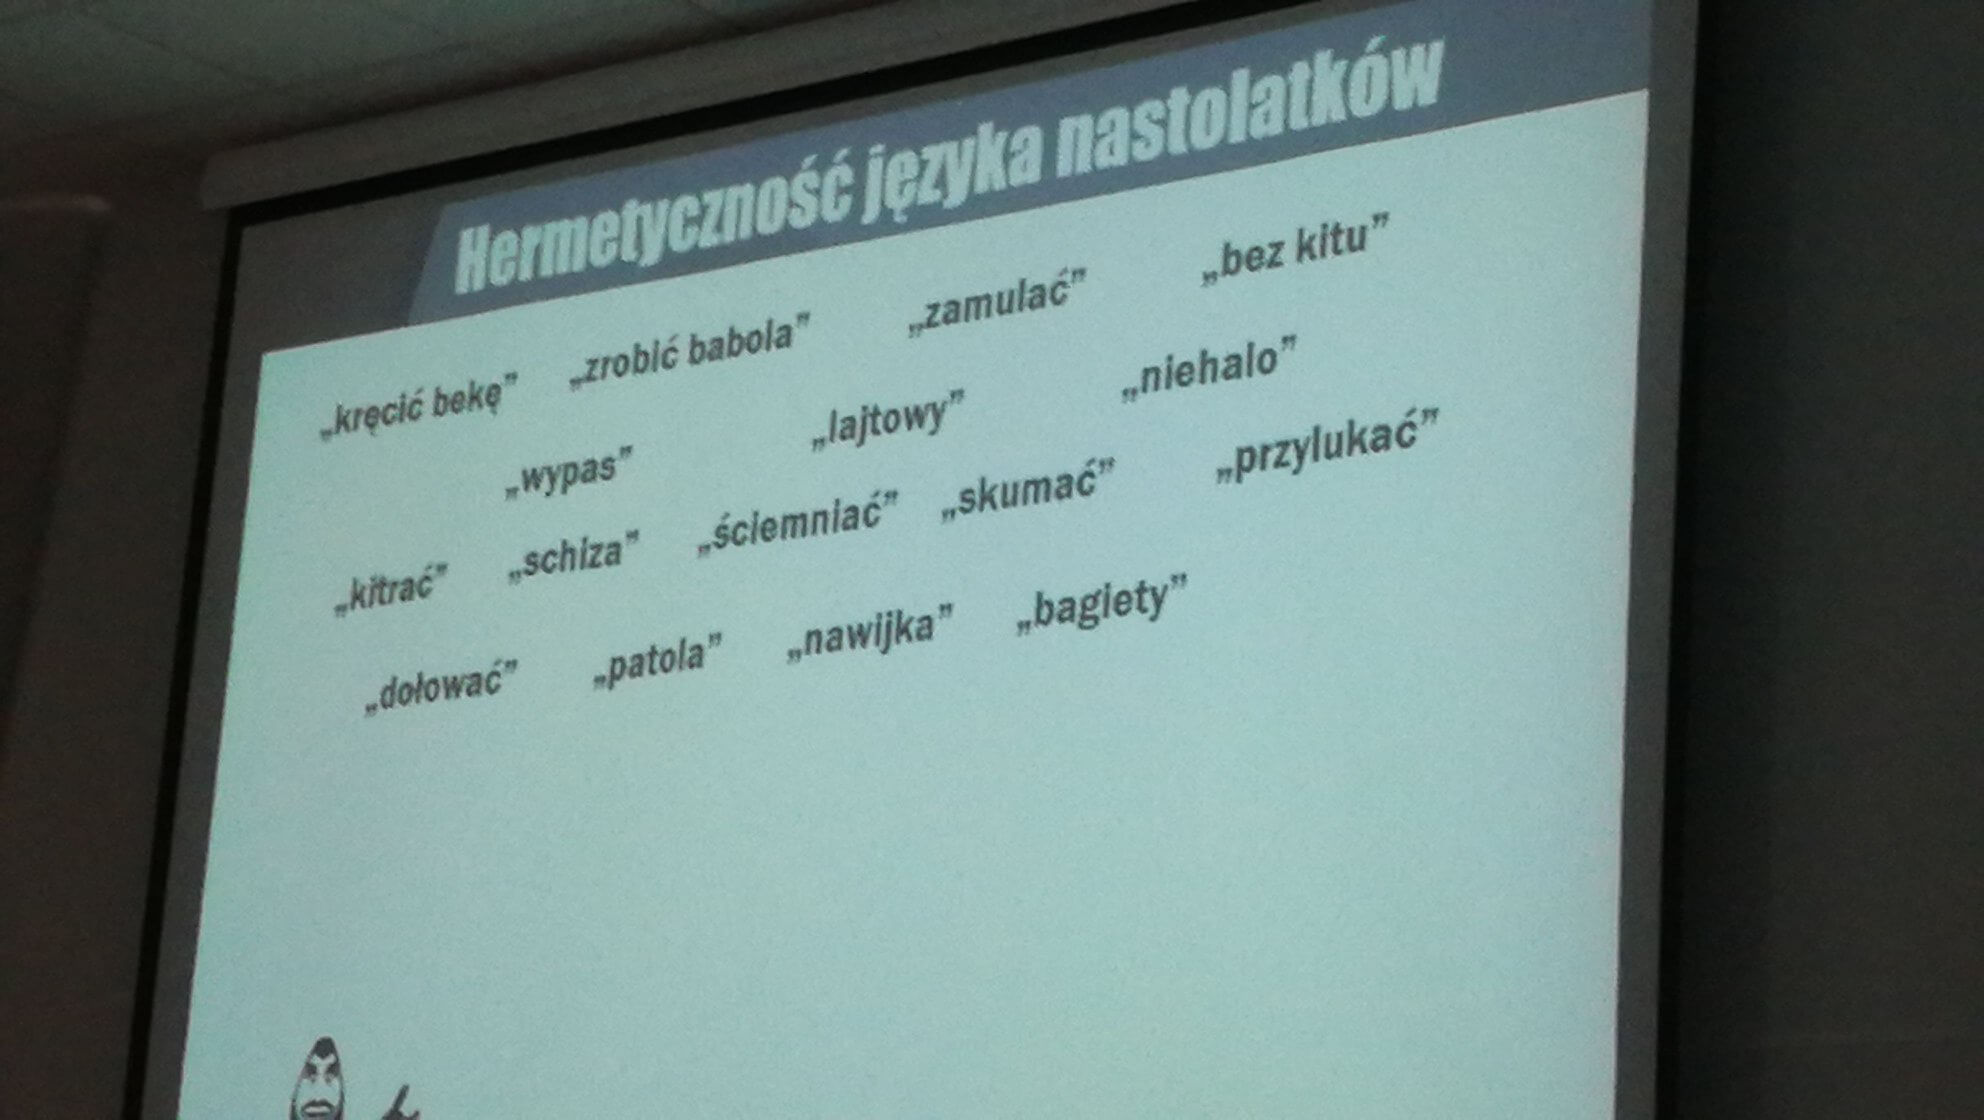 You are currently viewing Hermetyczność języka nastolatków